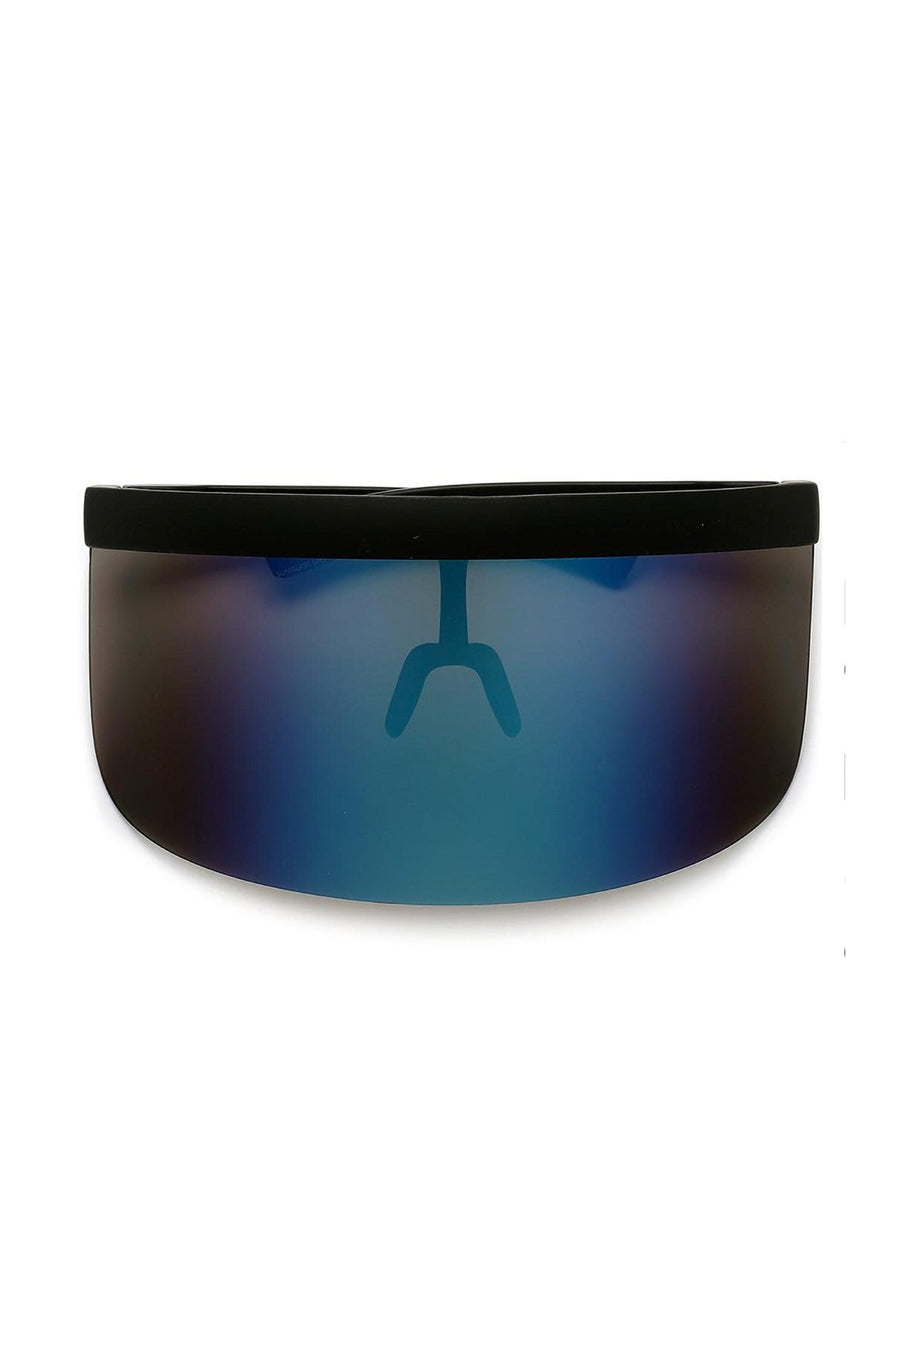 'Apollo' Visor Sunglasses